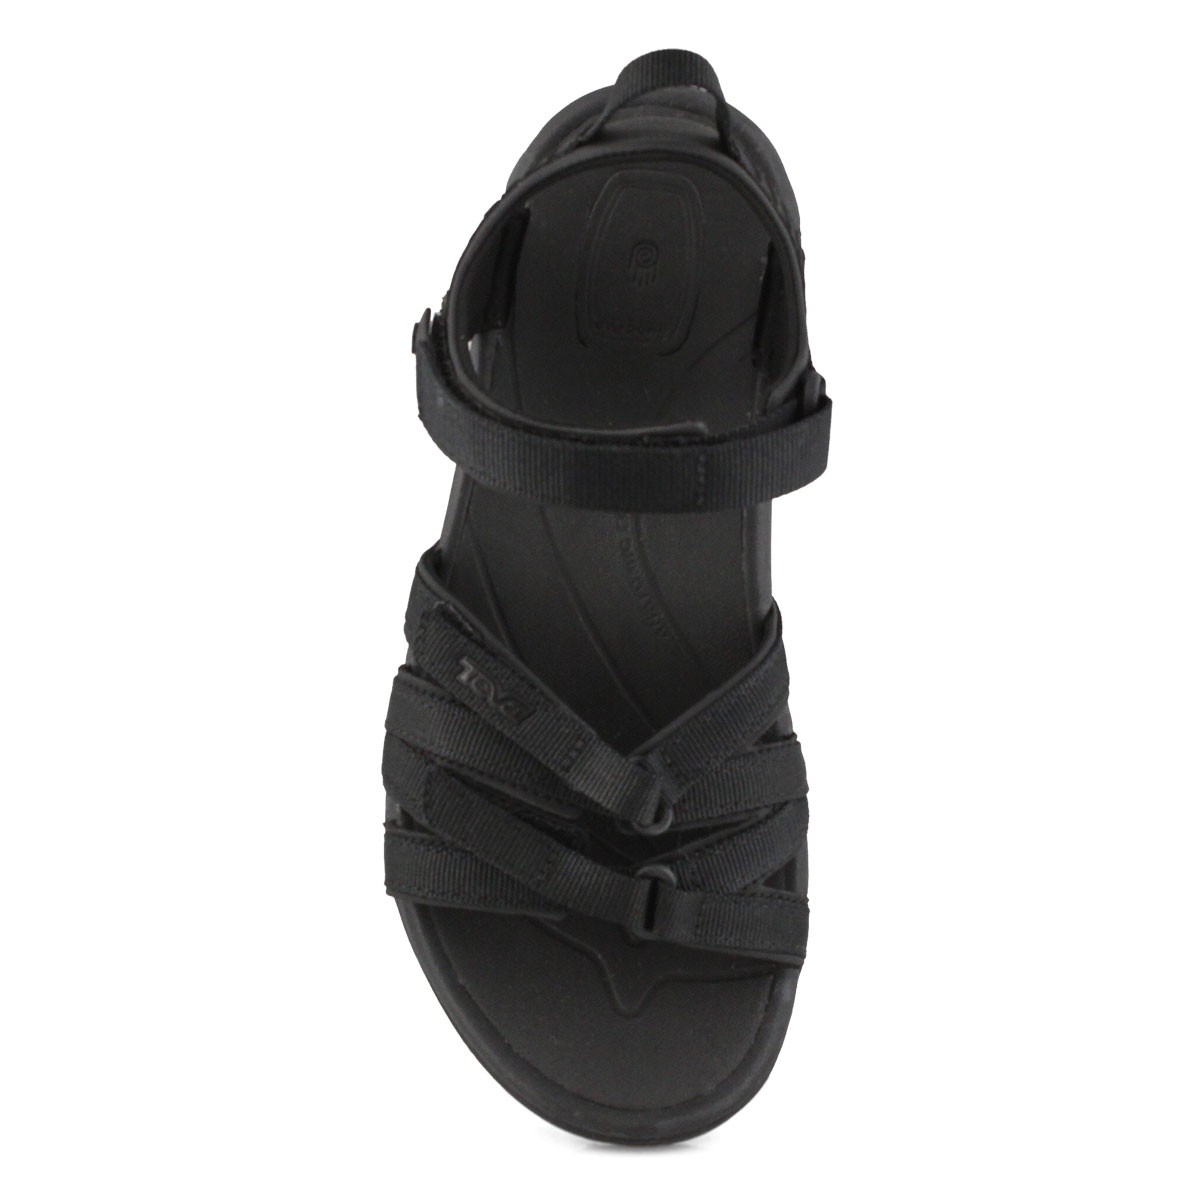 Women's Tirra Sport Sandal - Black/Black